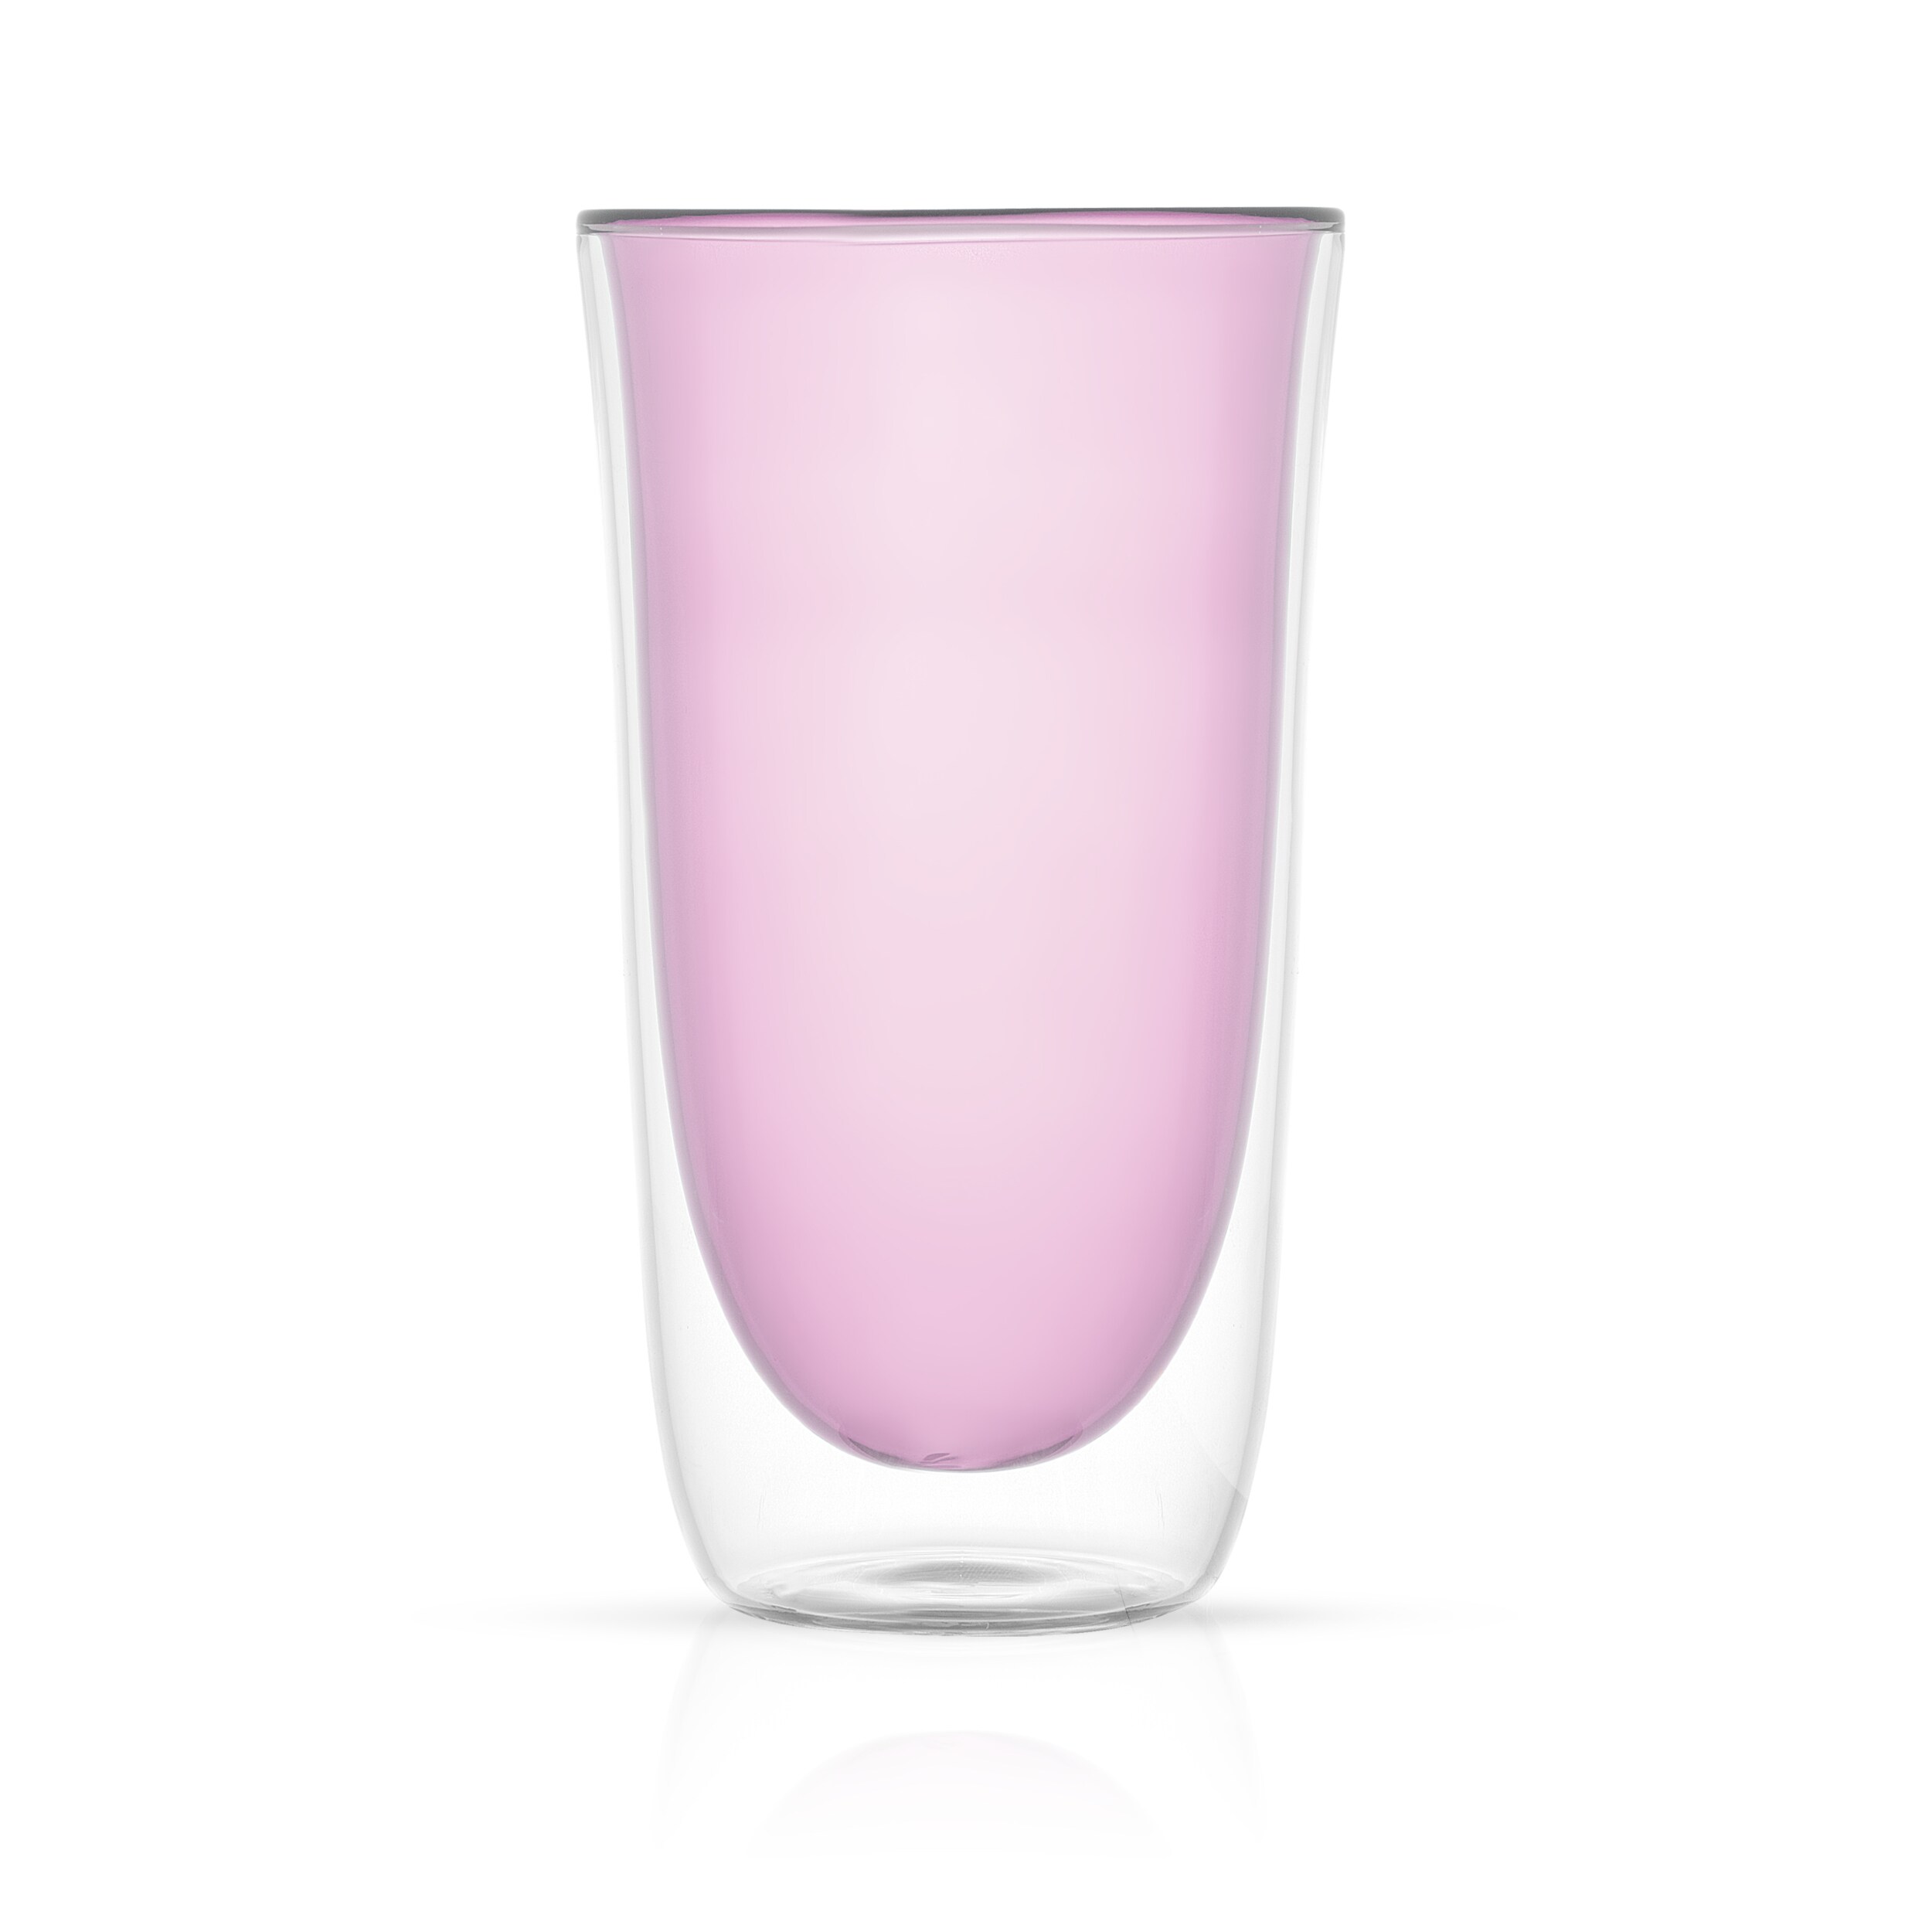 JoyJolt Spike 13.5-fl oz Glass Pink Goblet Set of: 4